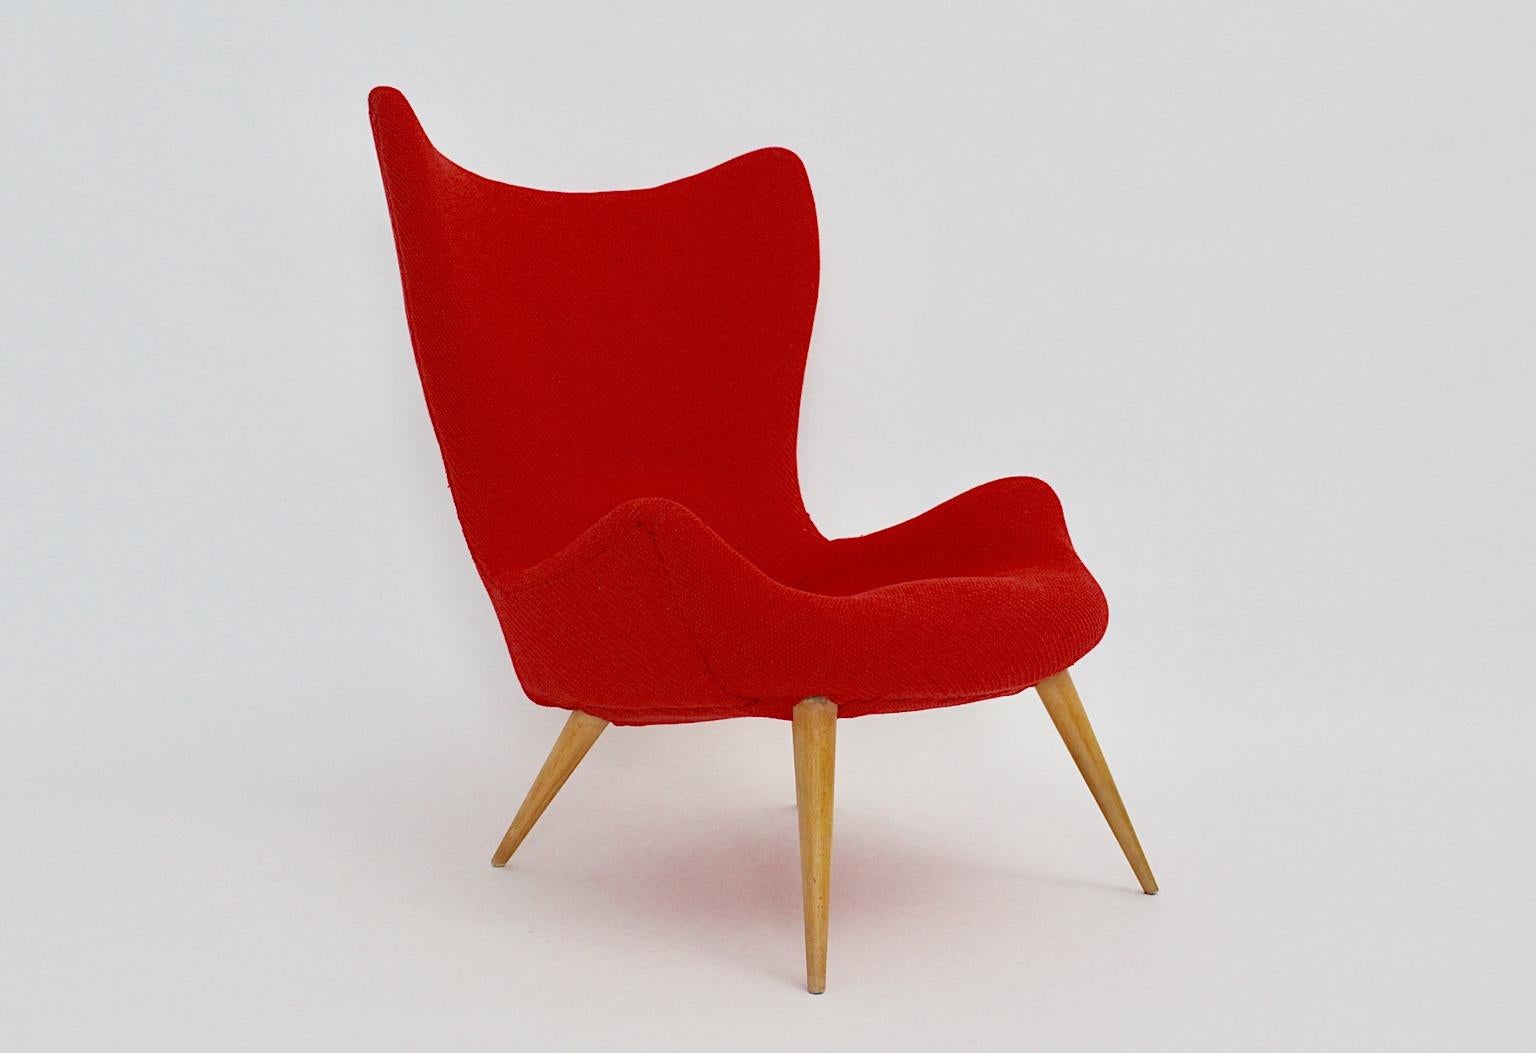 Mid Century Modern Vintage Lounge Chair oder Clubsessel aus Buche und rotem Wollstoff 1950er Jahre.
Ein wunderschöner Loungesessel mit vier ( 4 ) Buchenholzfüßen und einem neuen Bezug aus kirschrotem Textilstoff von Kvadrat aus den 1950er